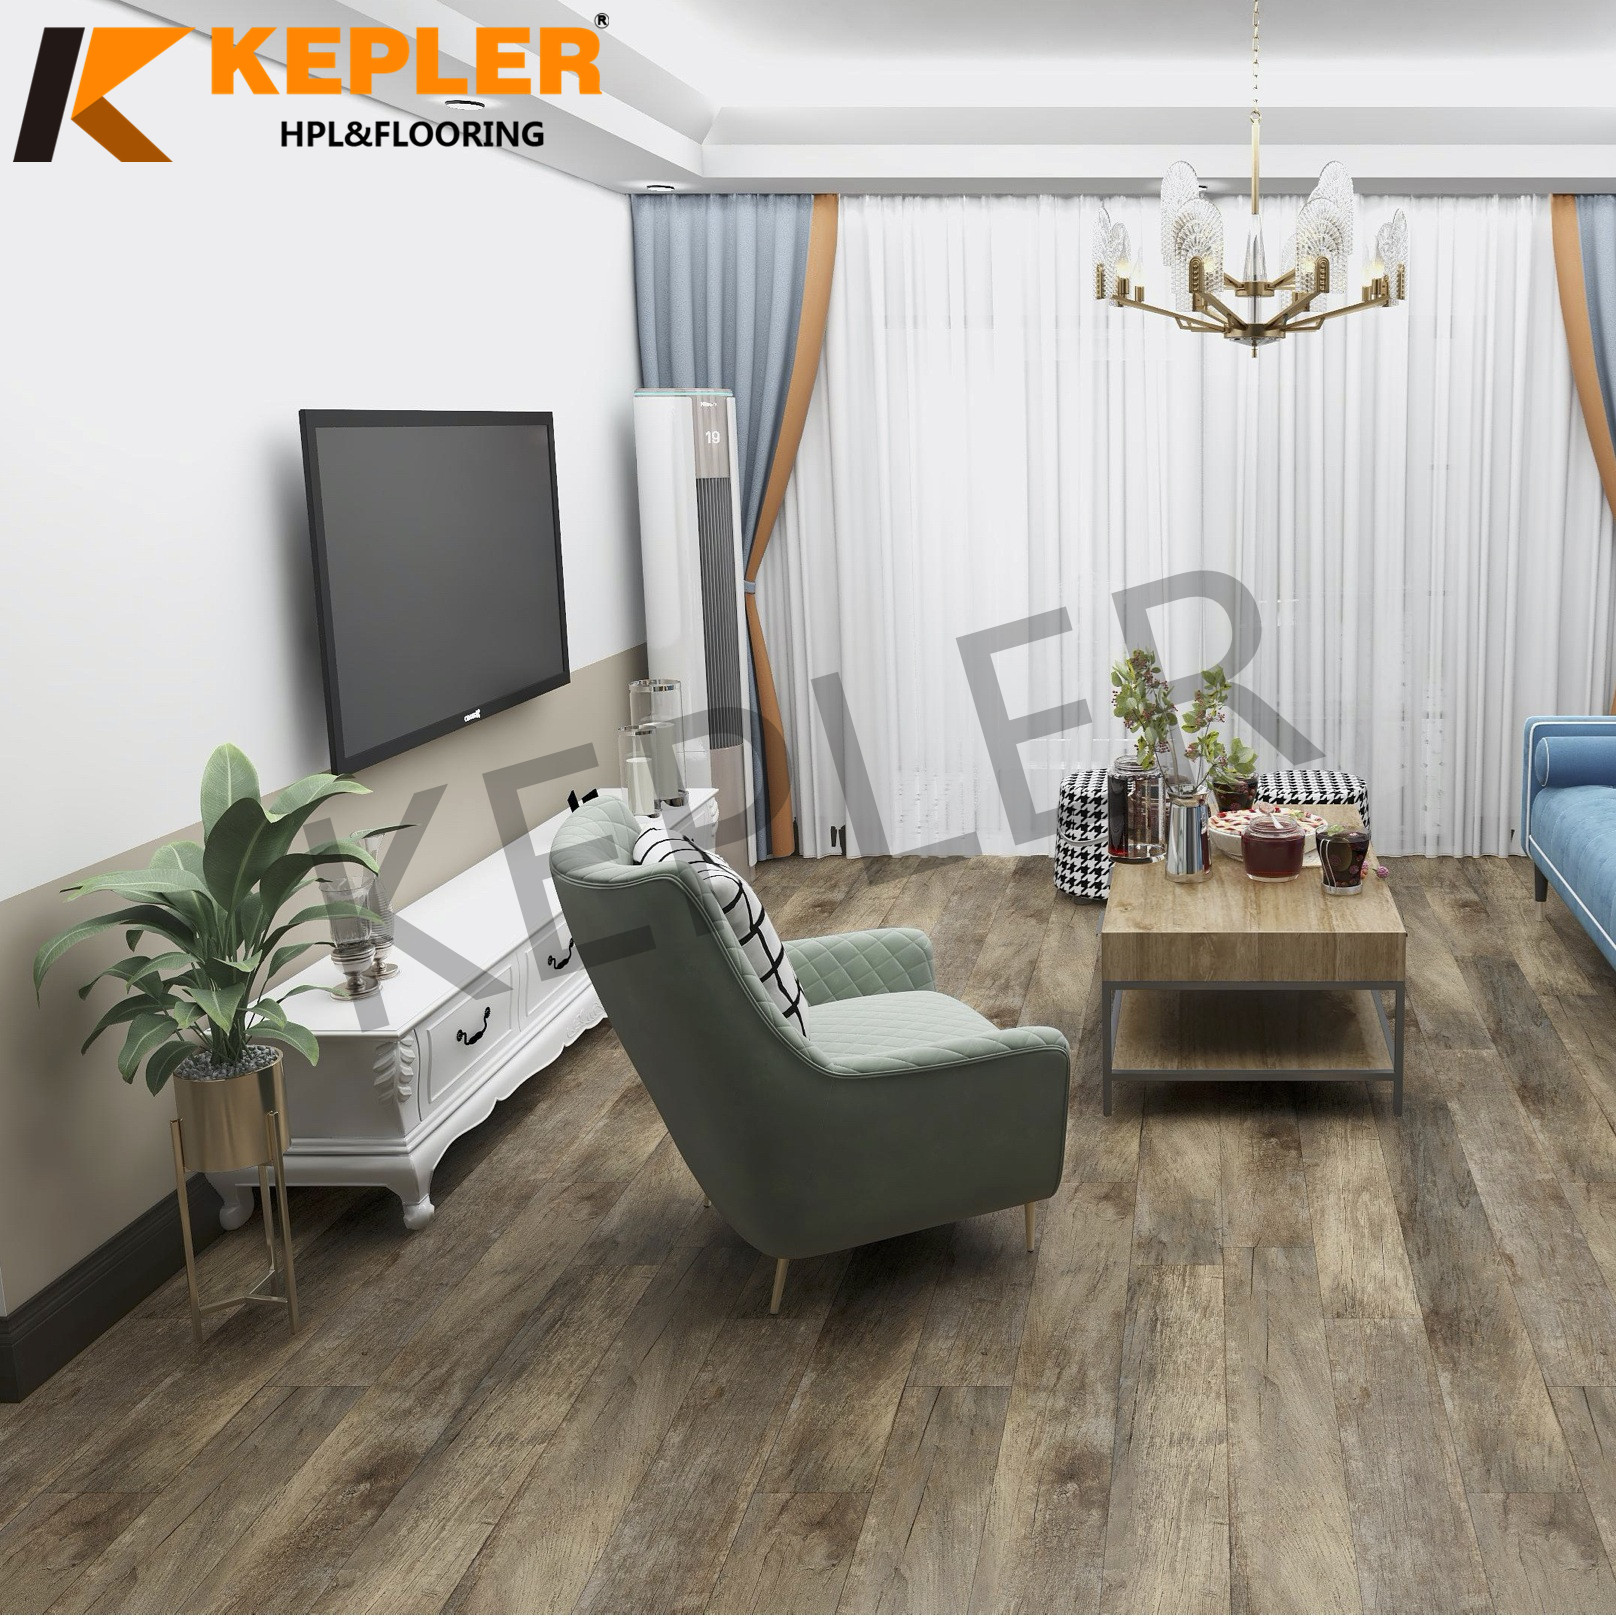 Kepler Hybrid RVP Rigid Vinyl Plank SPC Flooring 1830mm